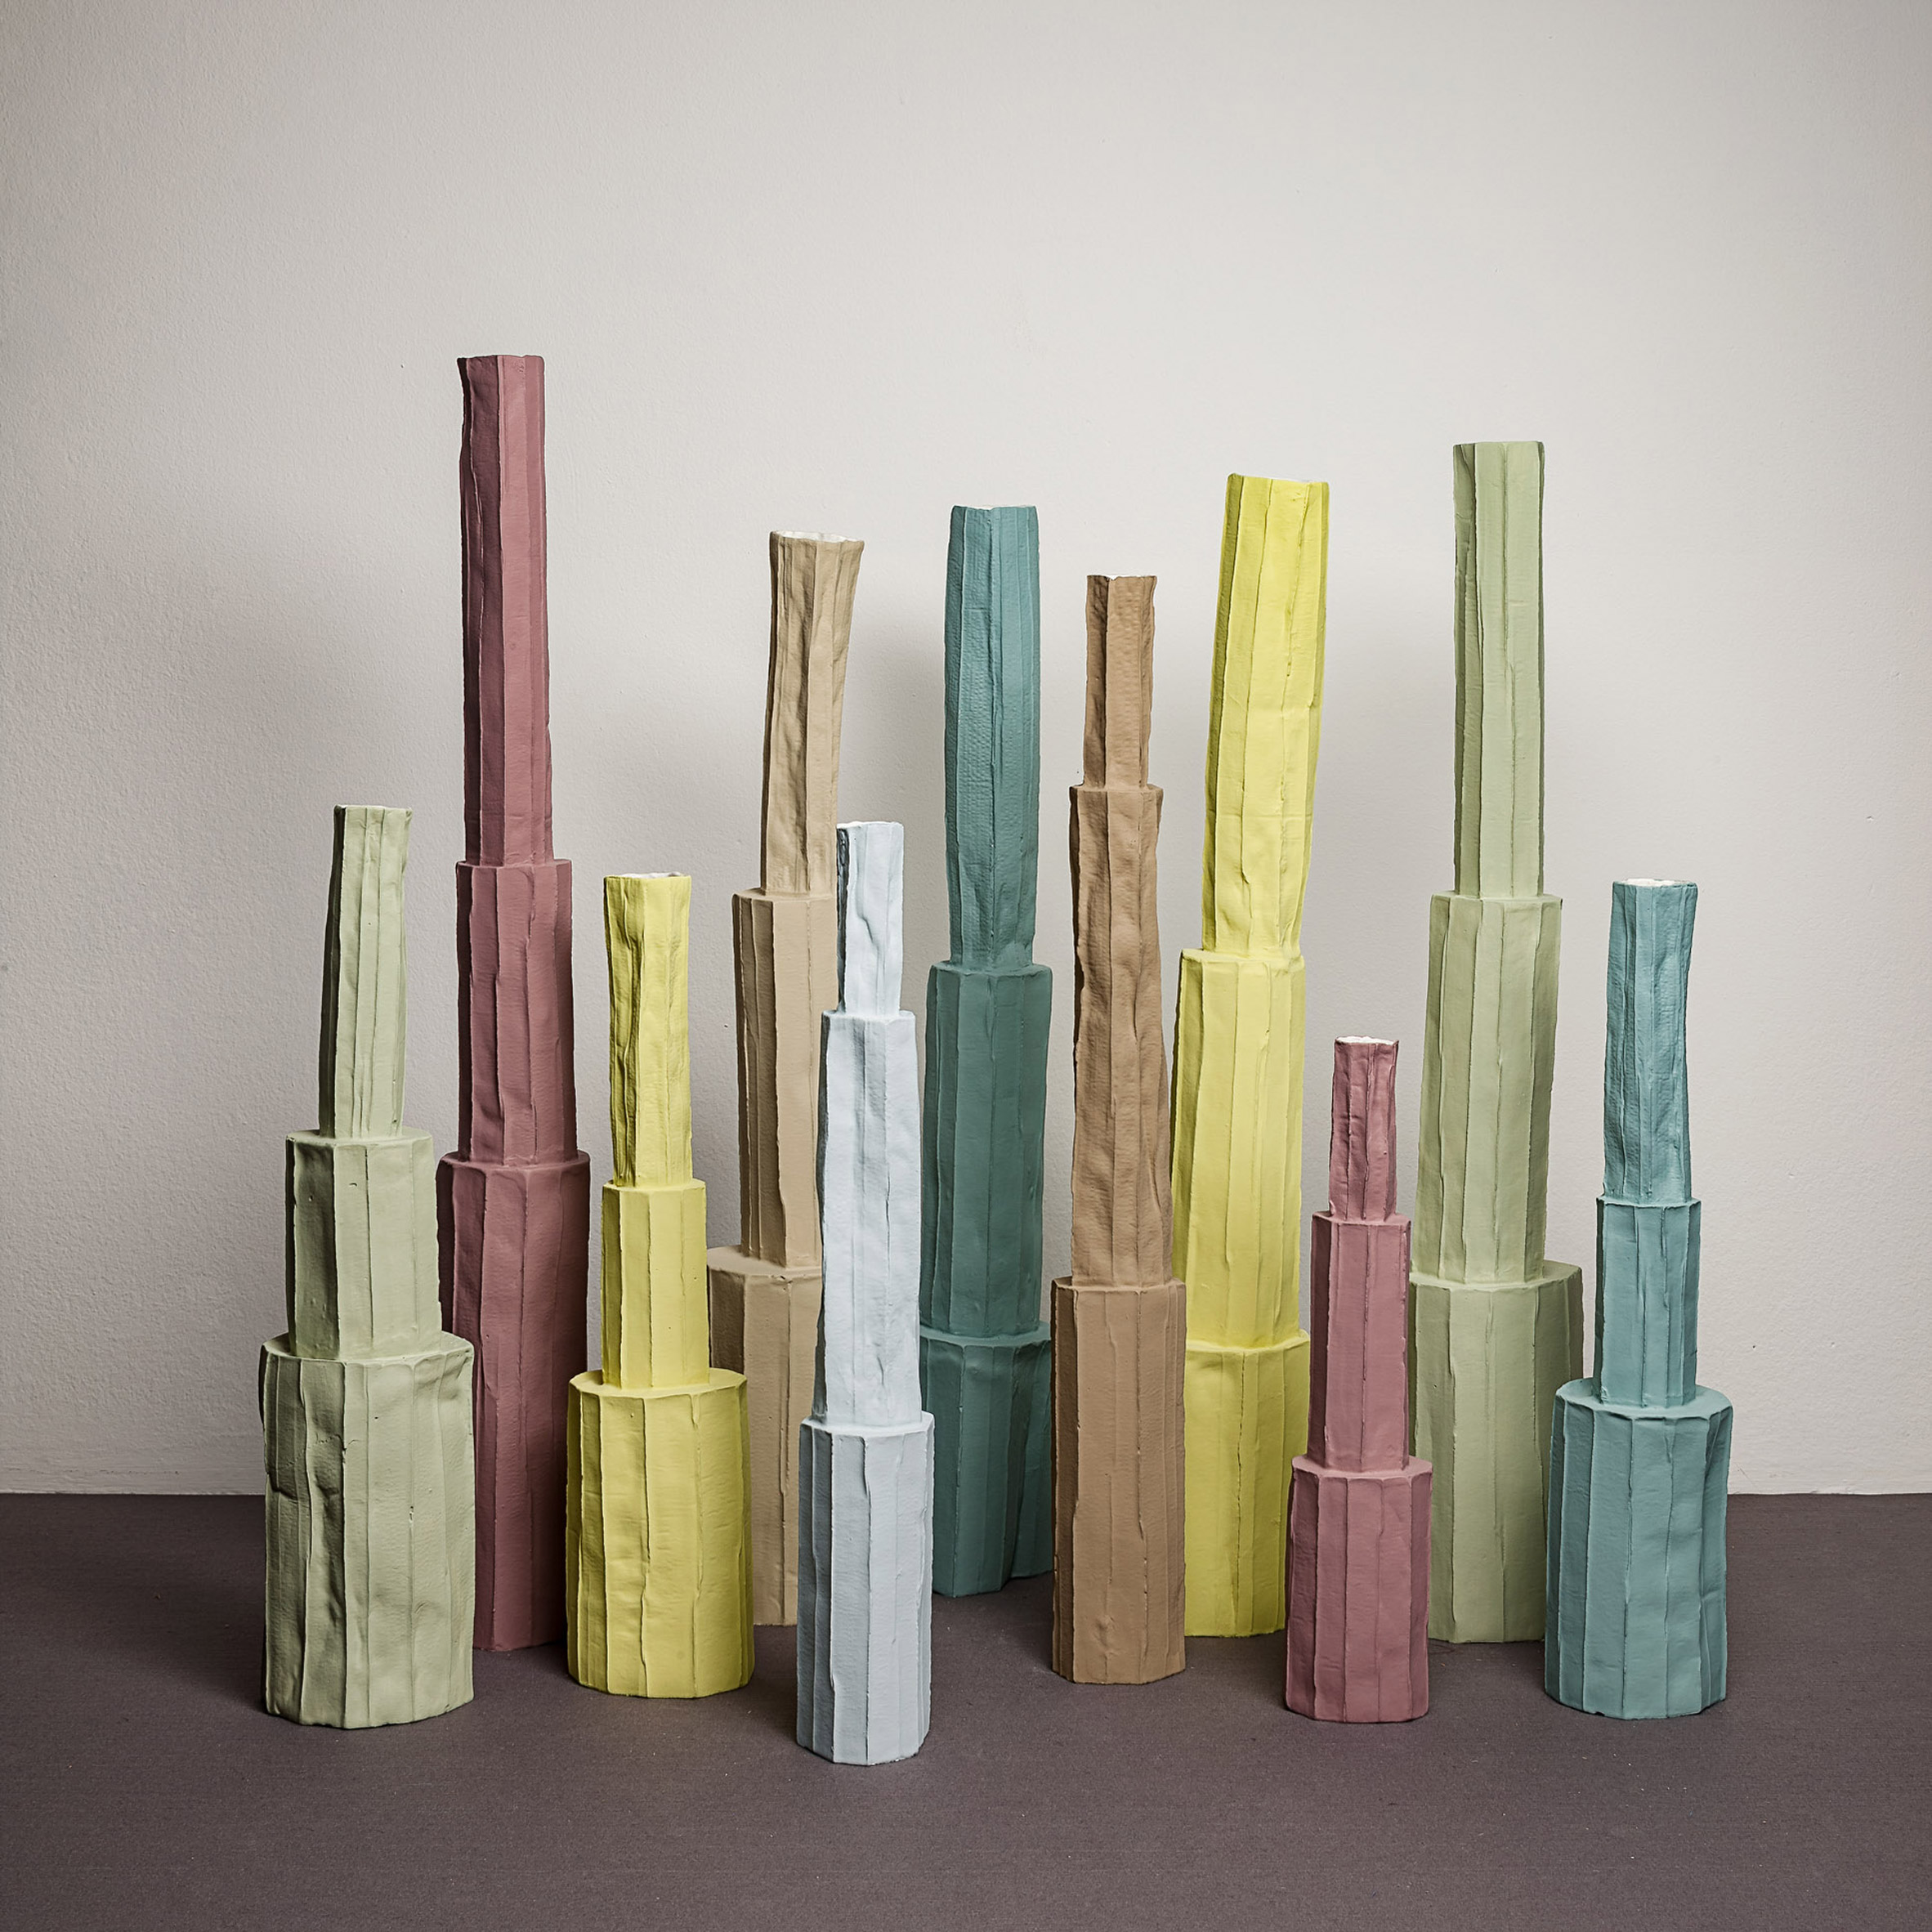 Pistilli paper clay ceramics by Paola Paronetto